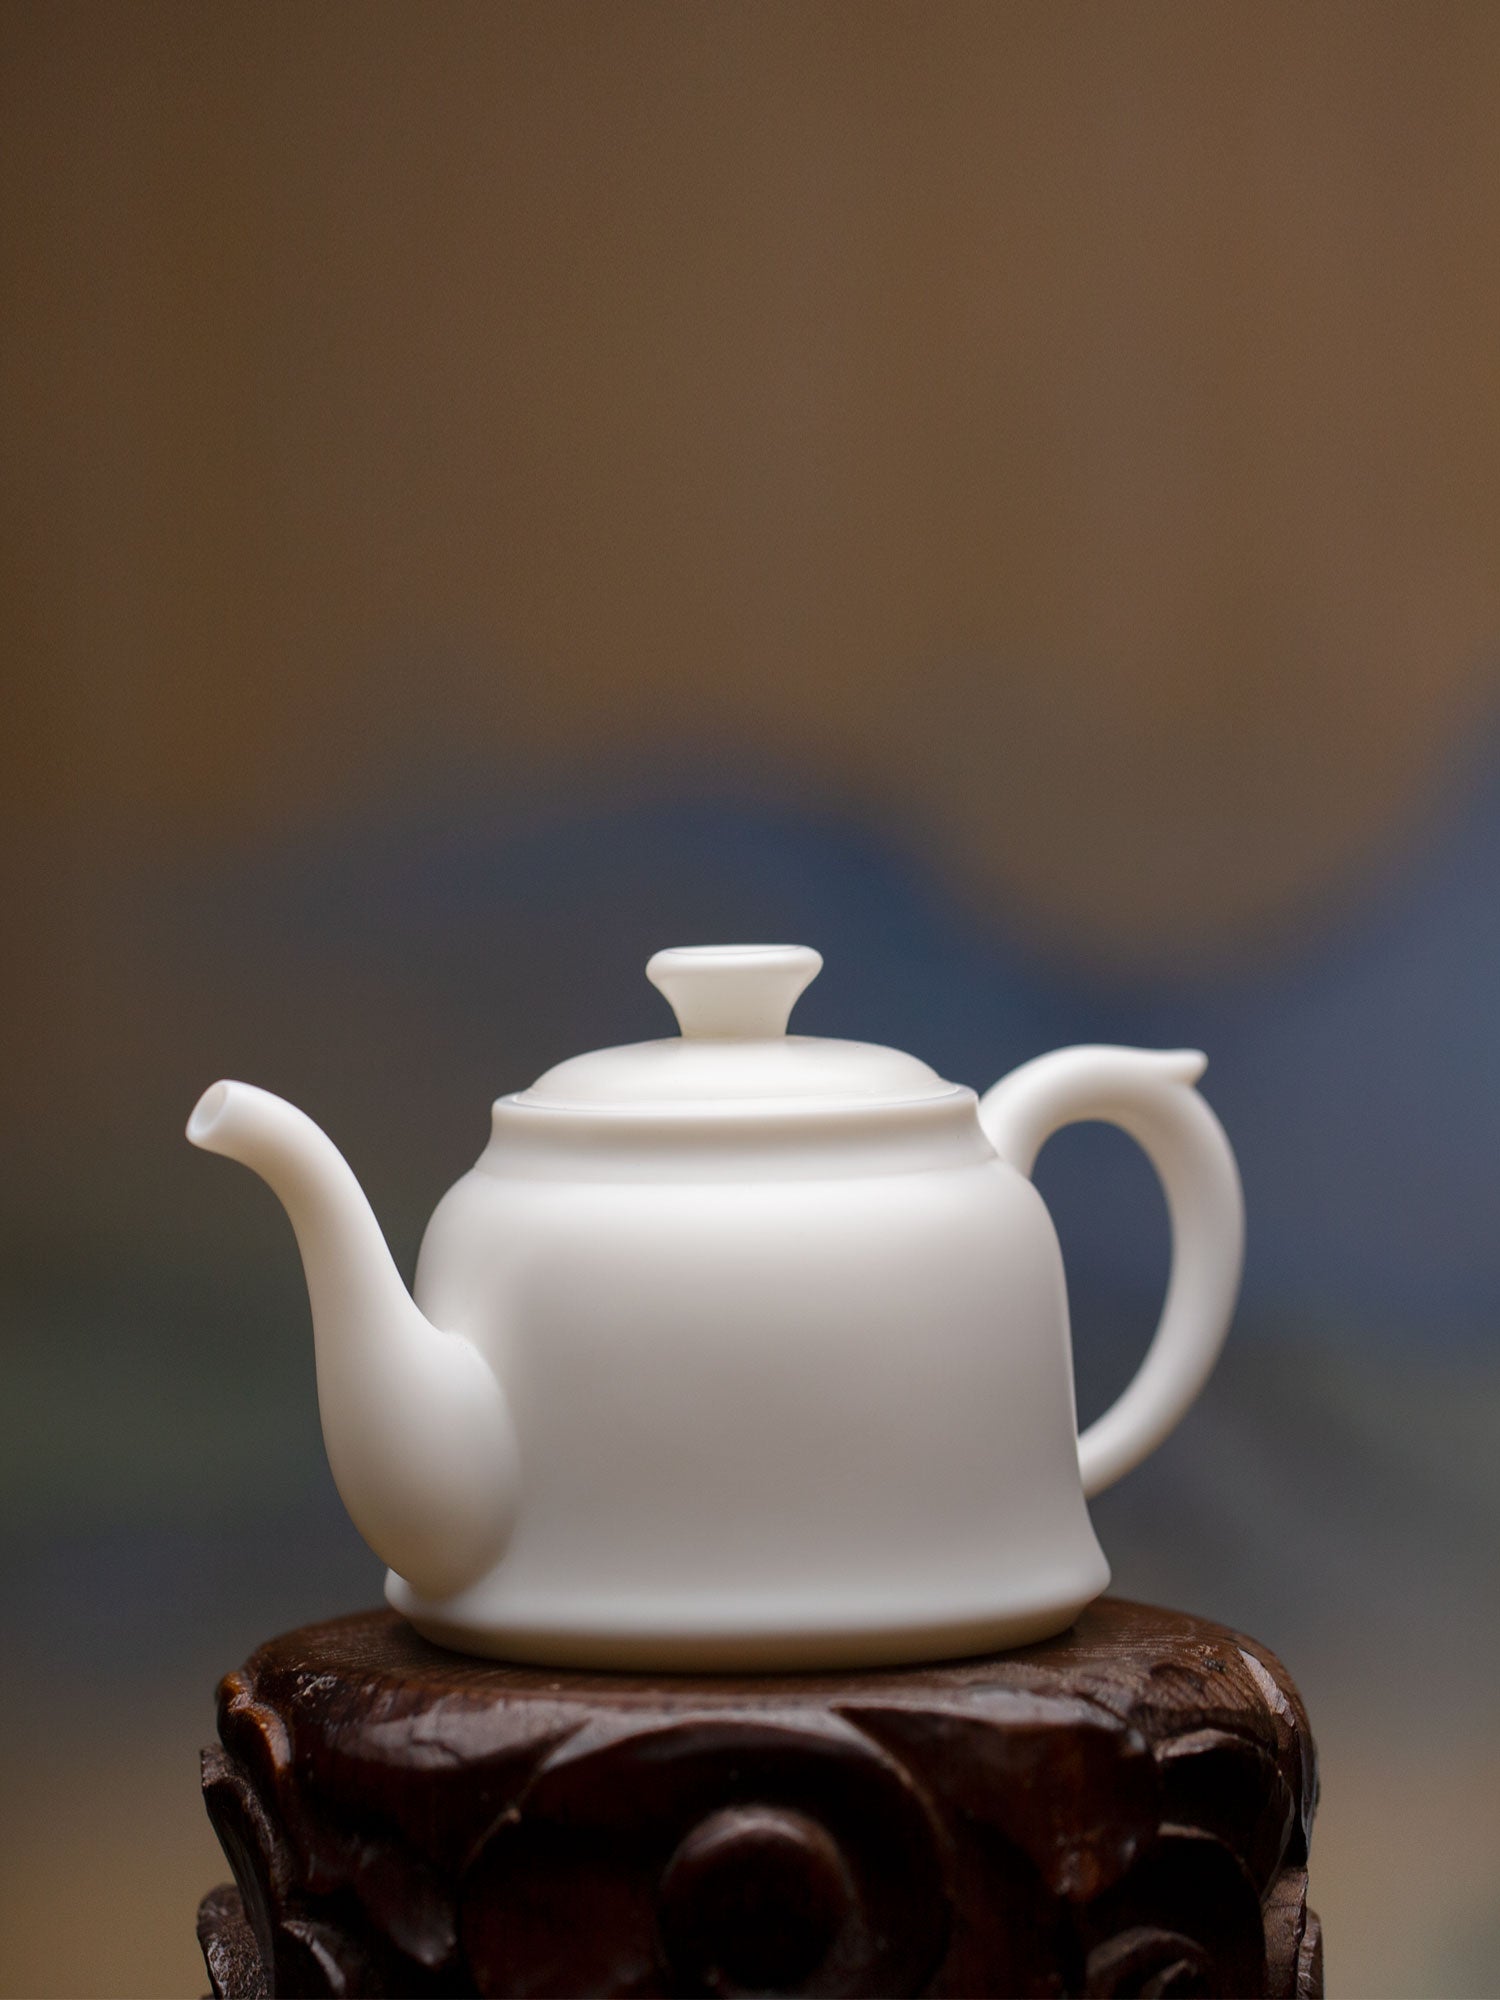 Handmade White Jade-like Porcelain Teapot 2